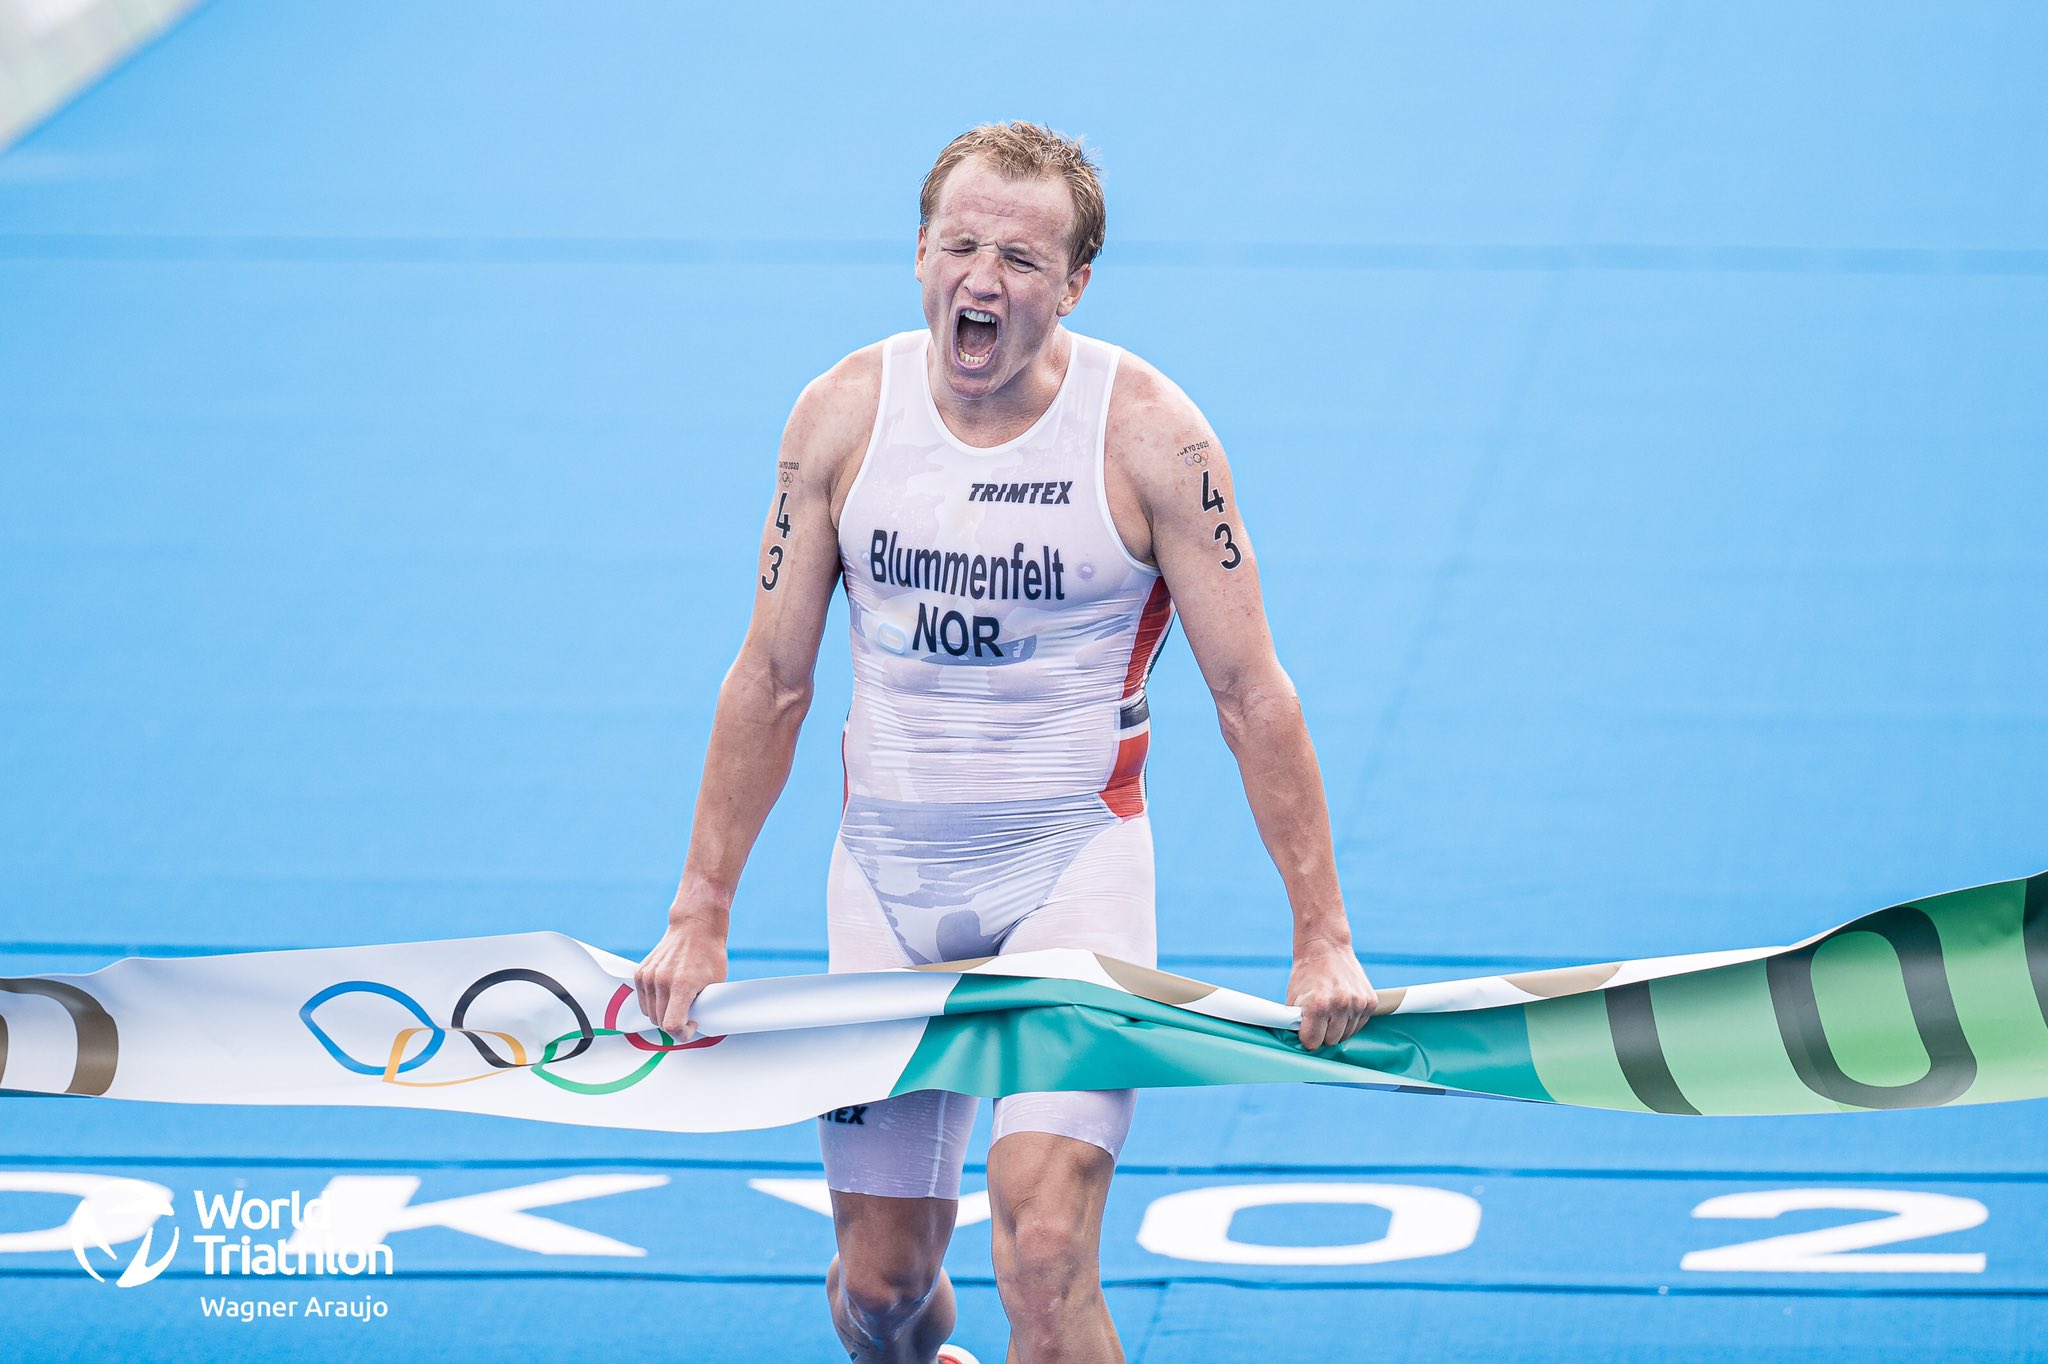 Olympic gold medalist Kristian Blummenfelt looks to "run away from